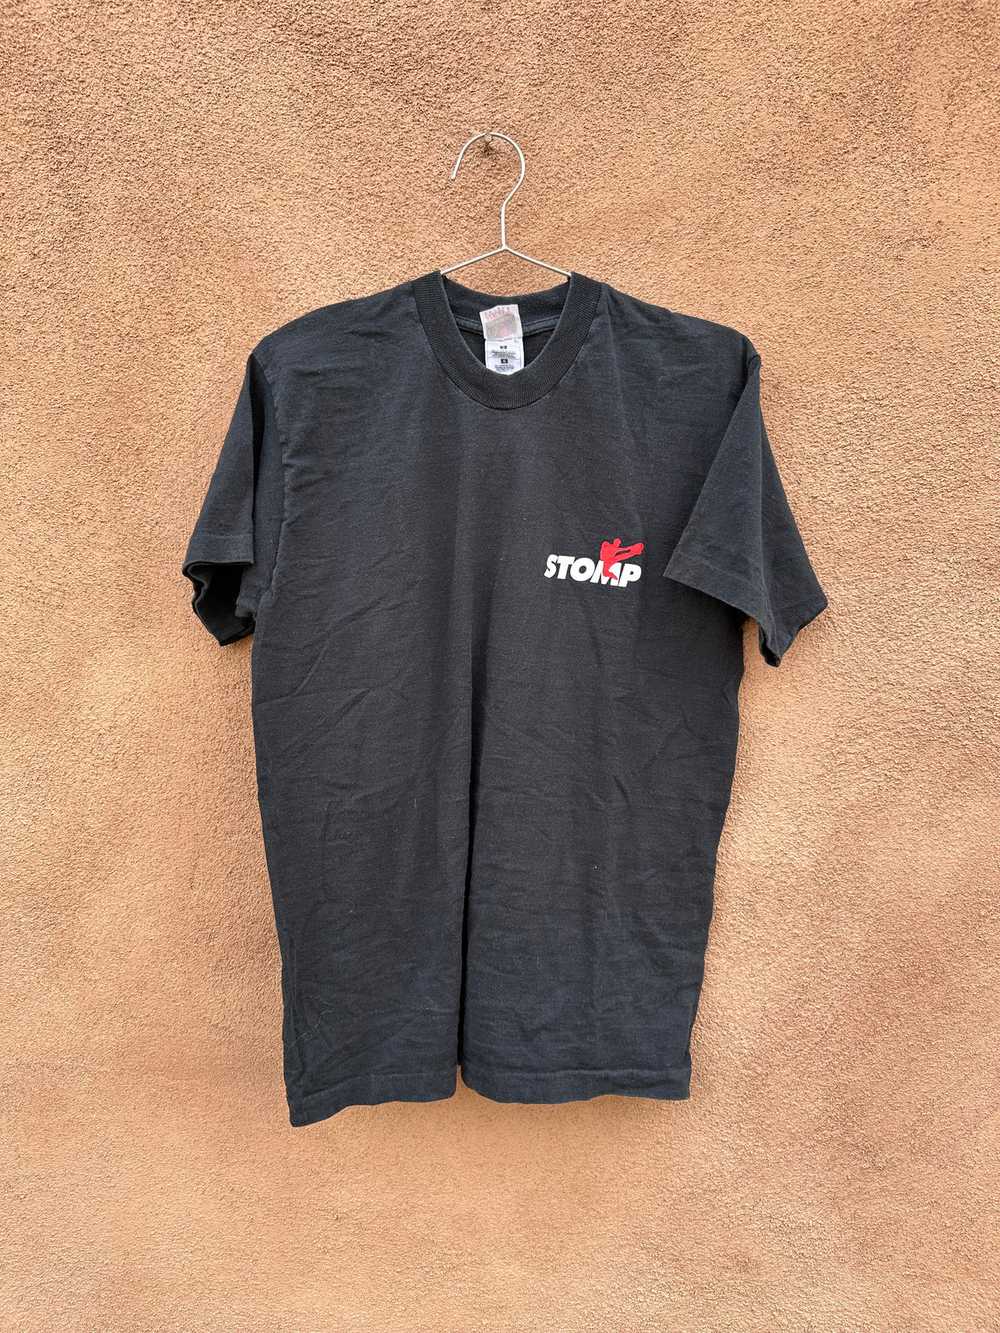 '96-'97 Stomp Tour T-shirt - image 1